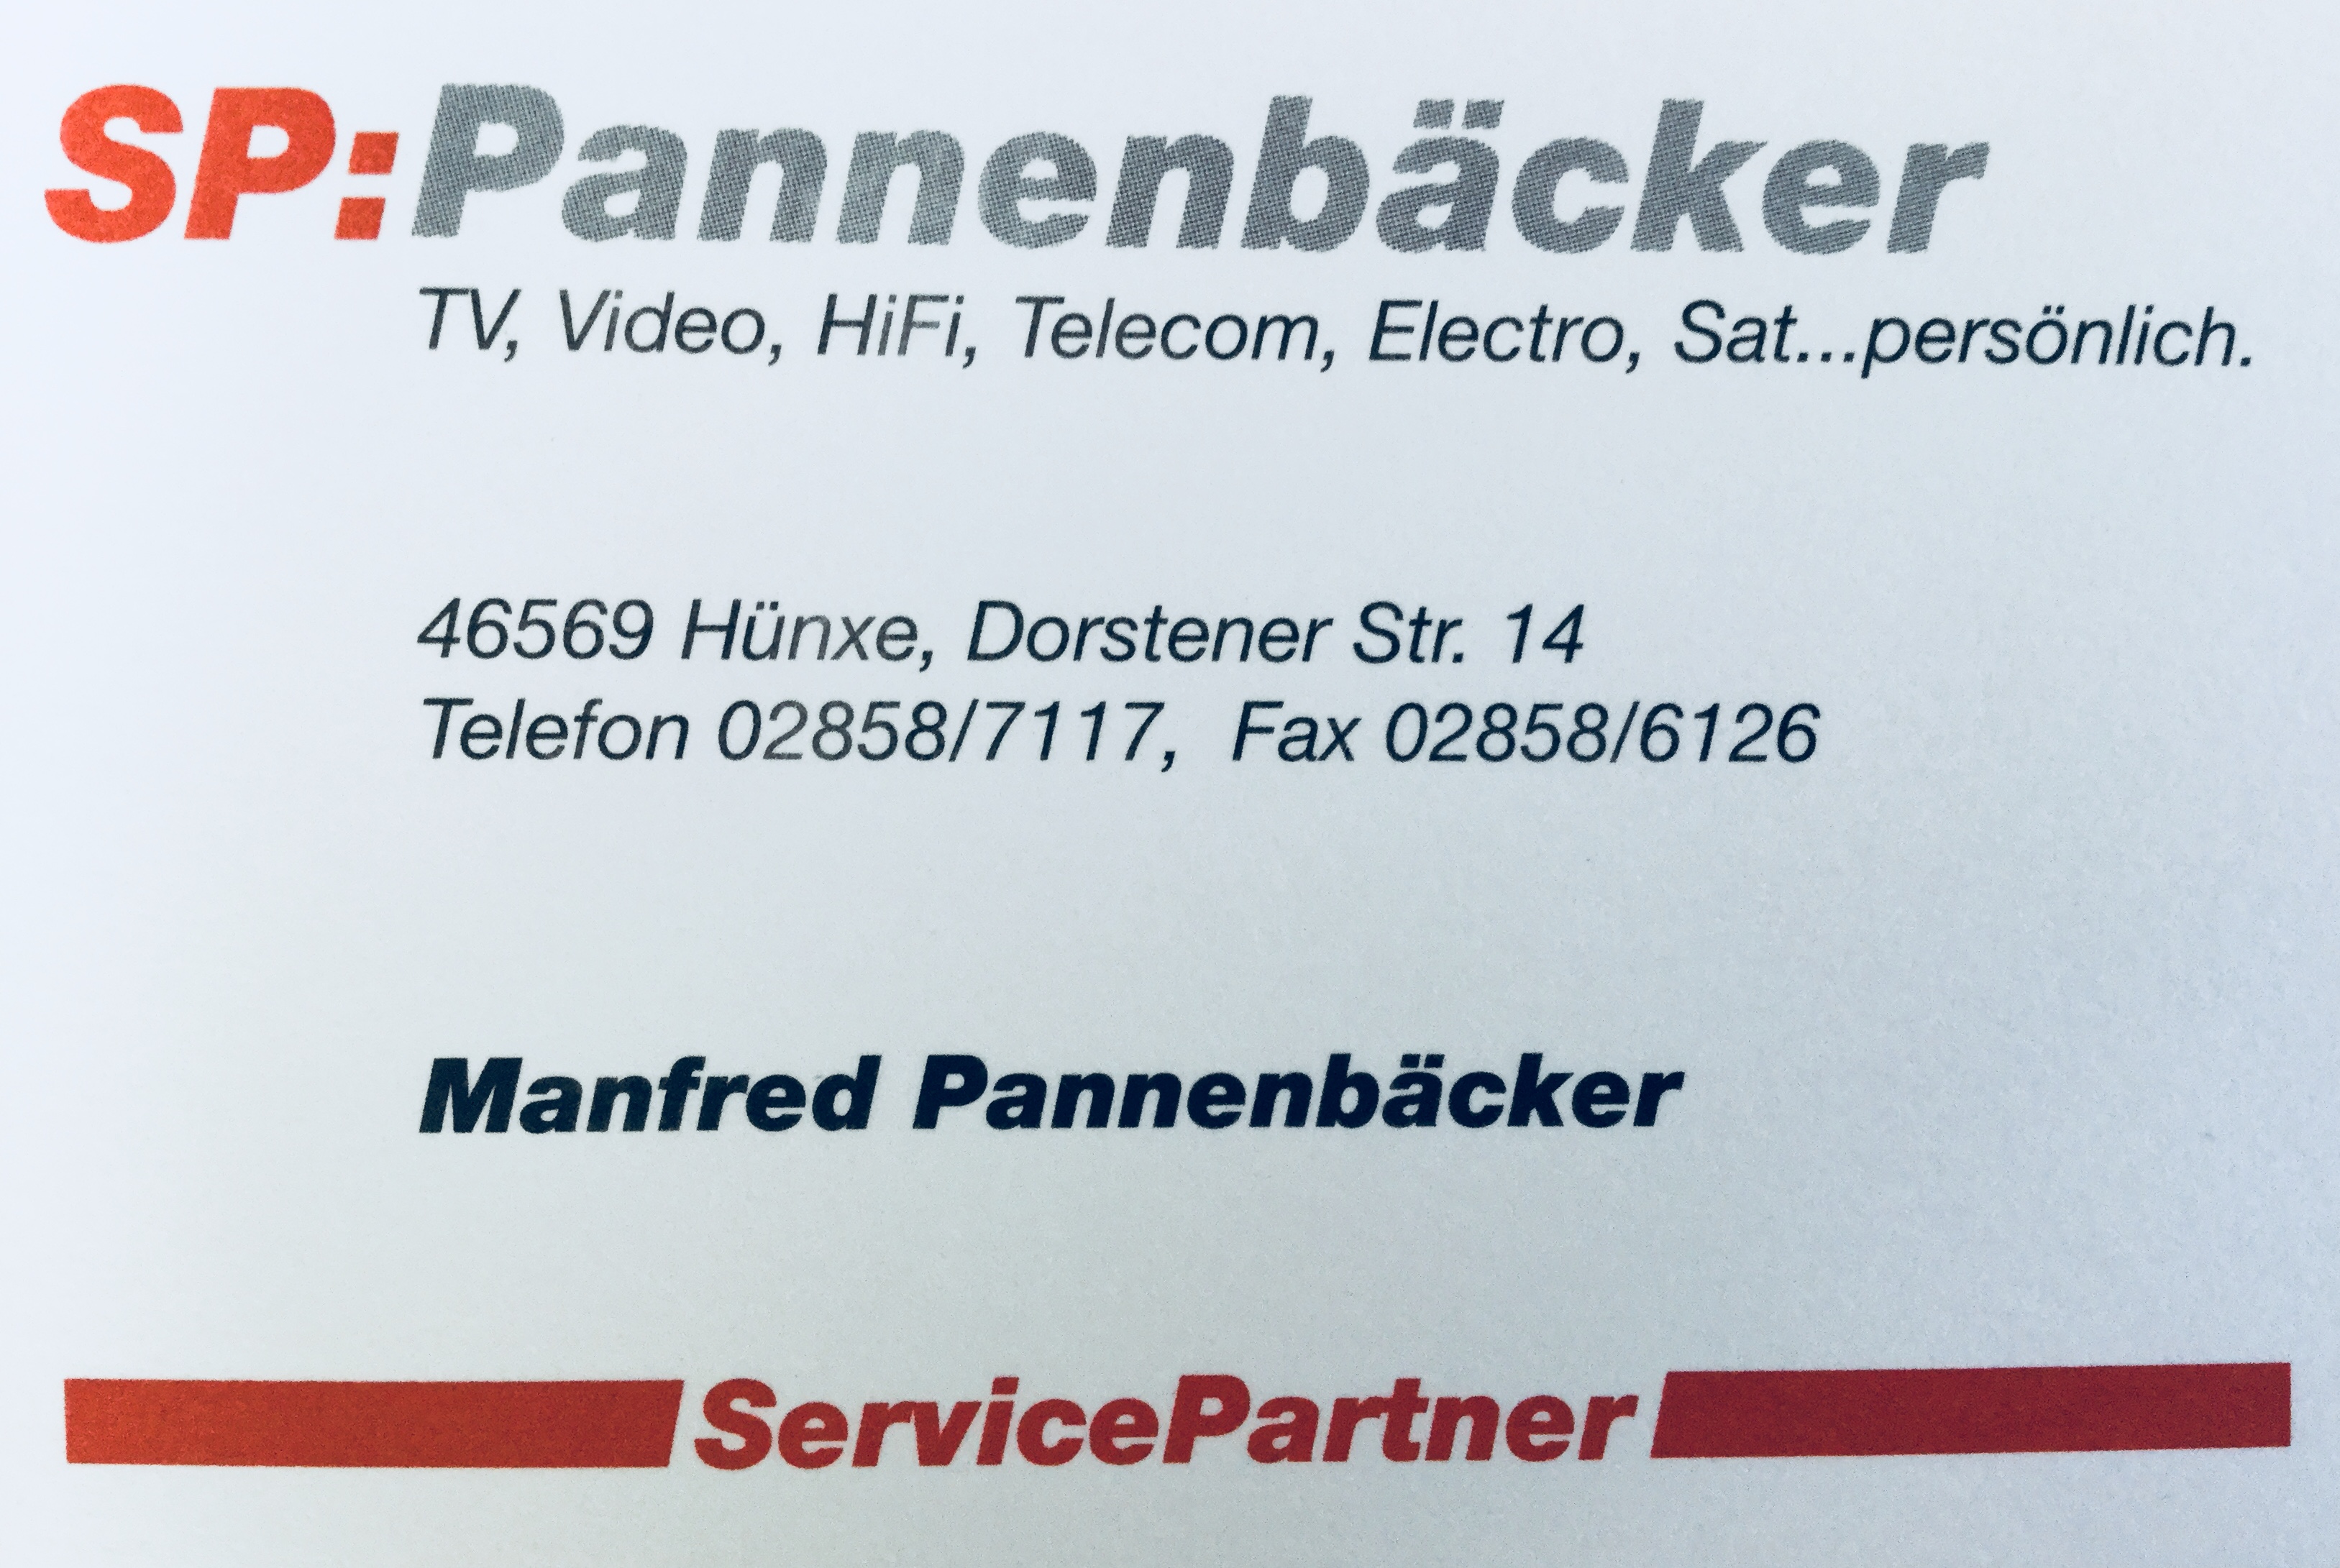 http://www.sp-pannenbaecker.de/